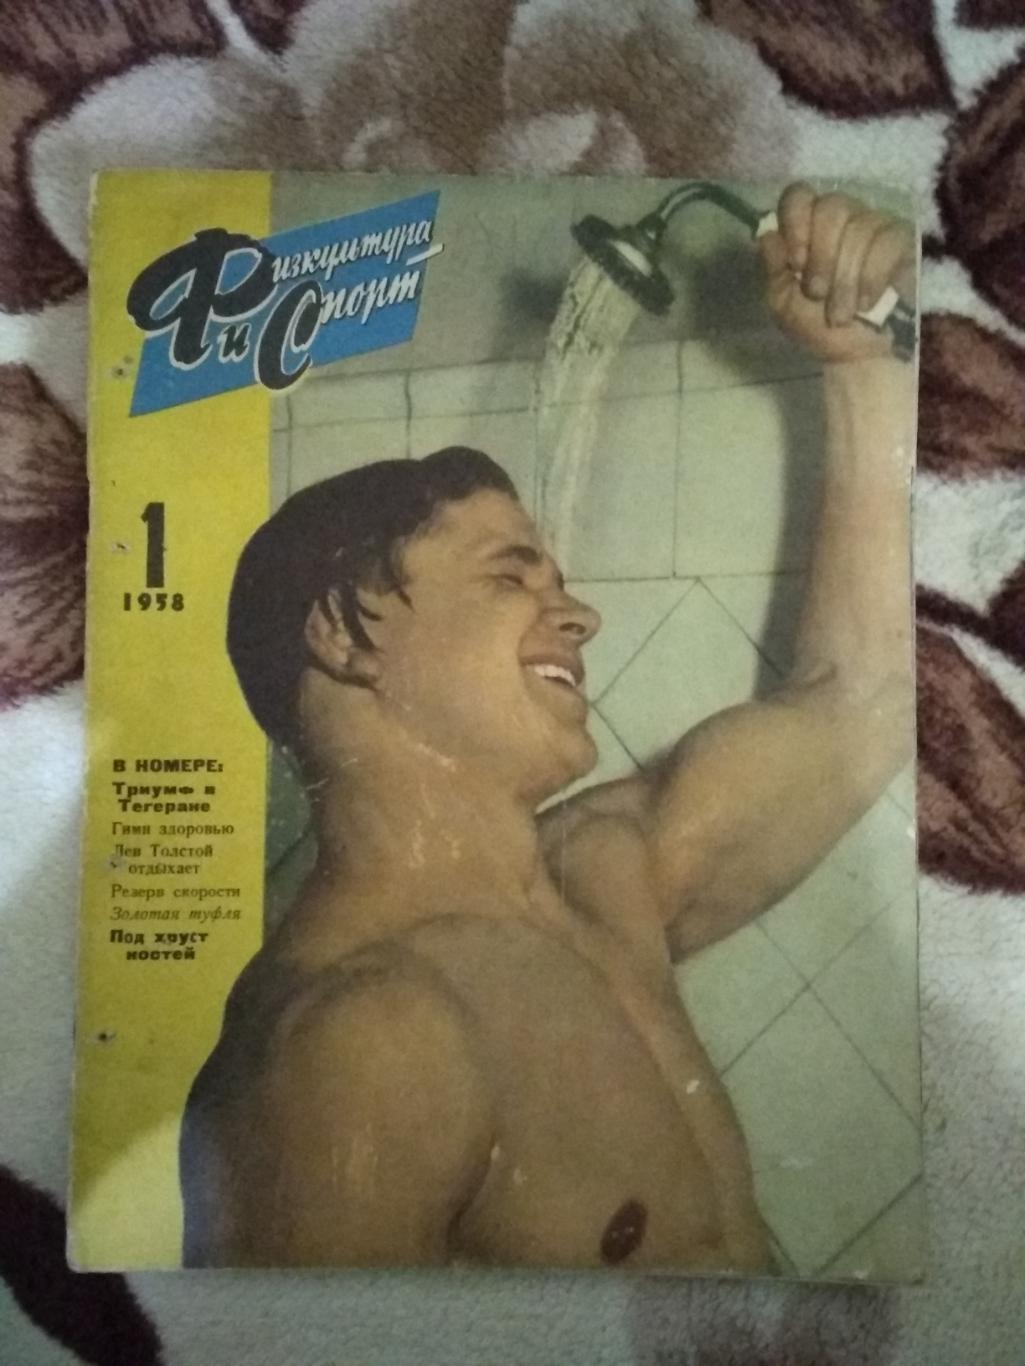 Журнал.Физкультура и спорт № 1 1958 г. (ФиС).